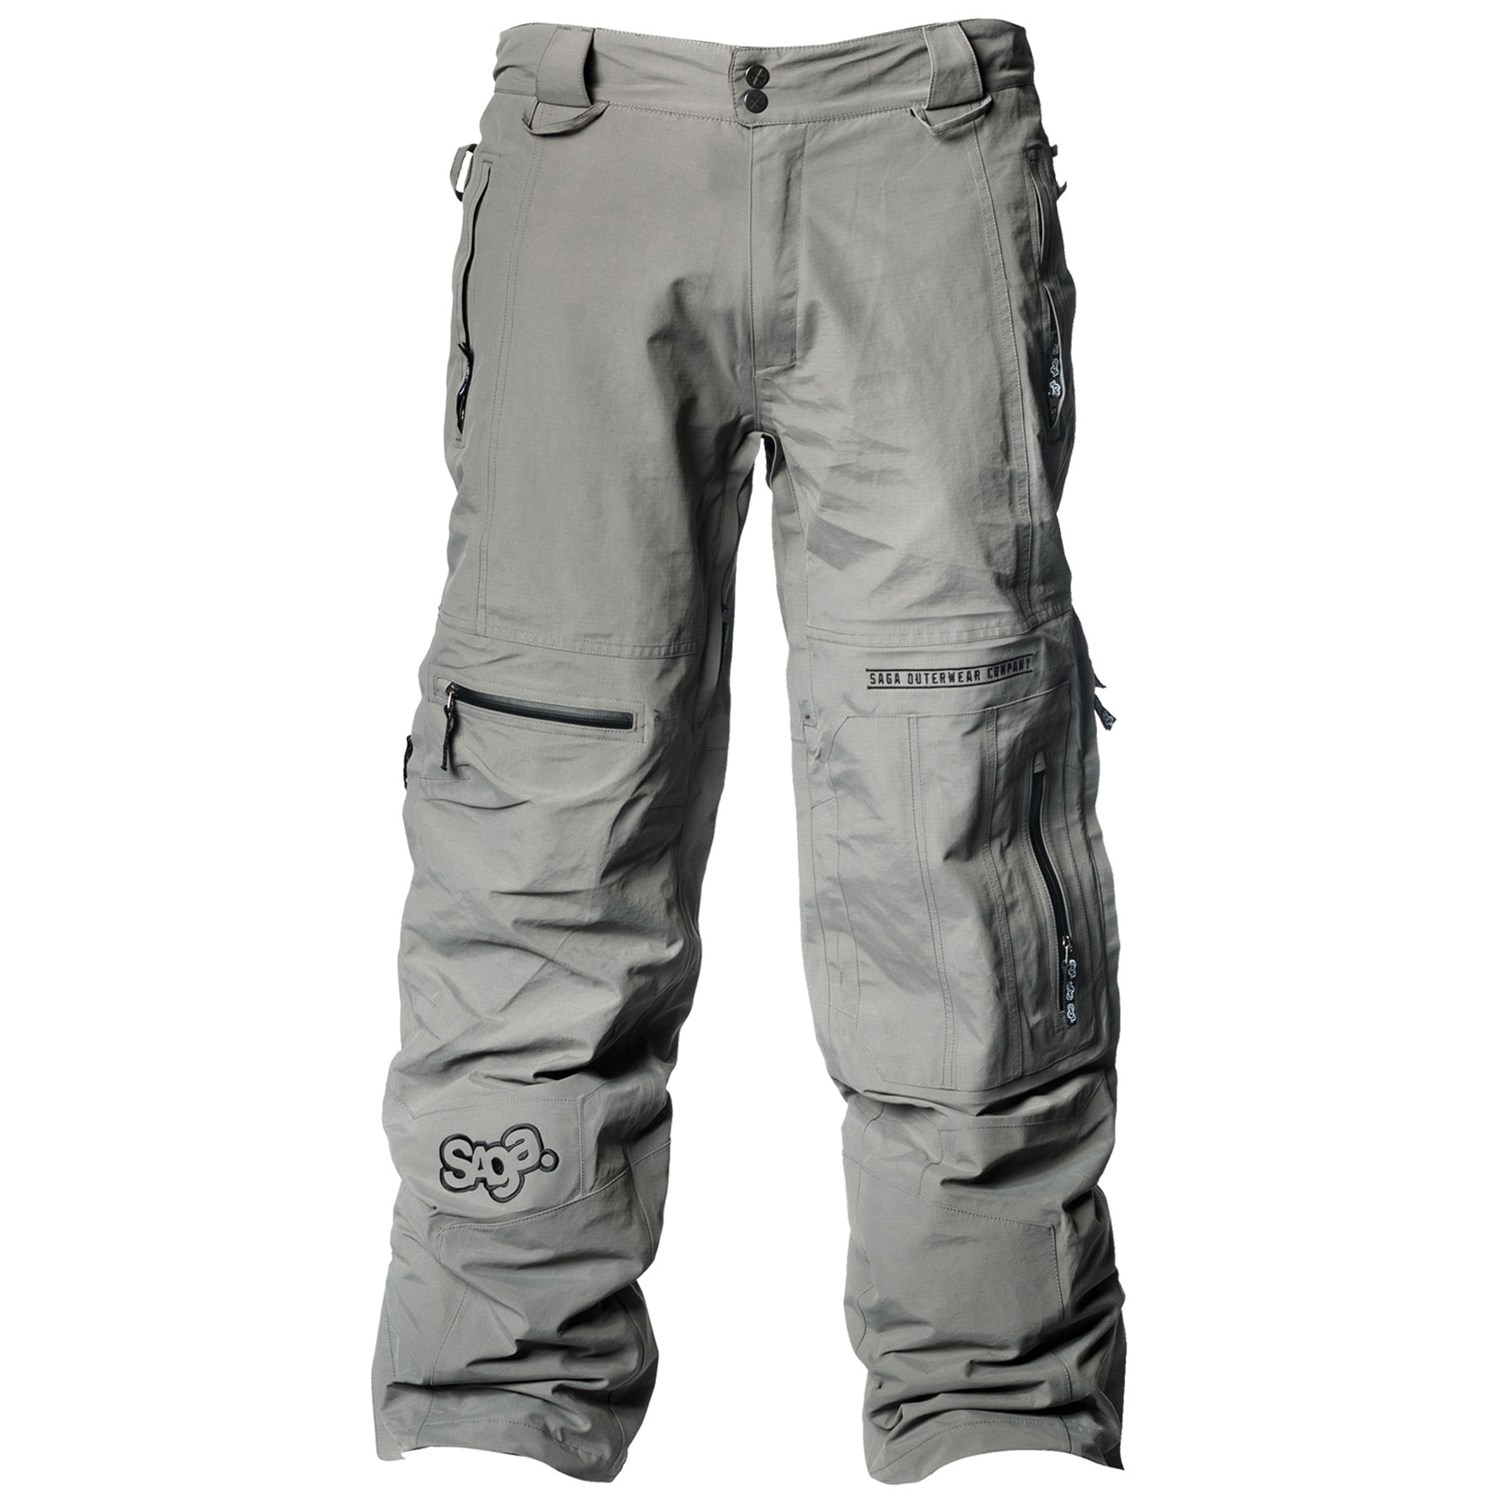 Отзывы штаны m размера Saga Anomie 3L Grey (M) в Украине